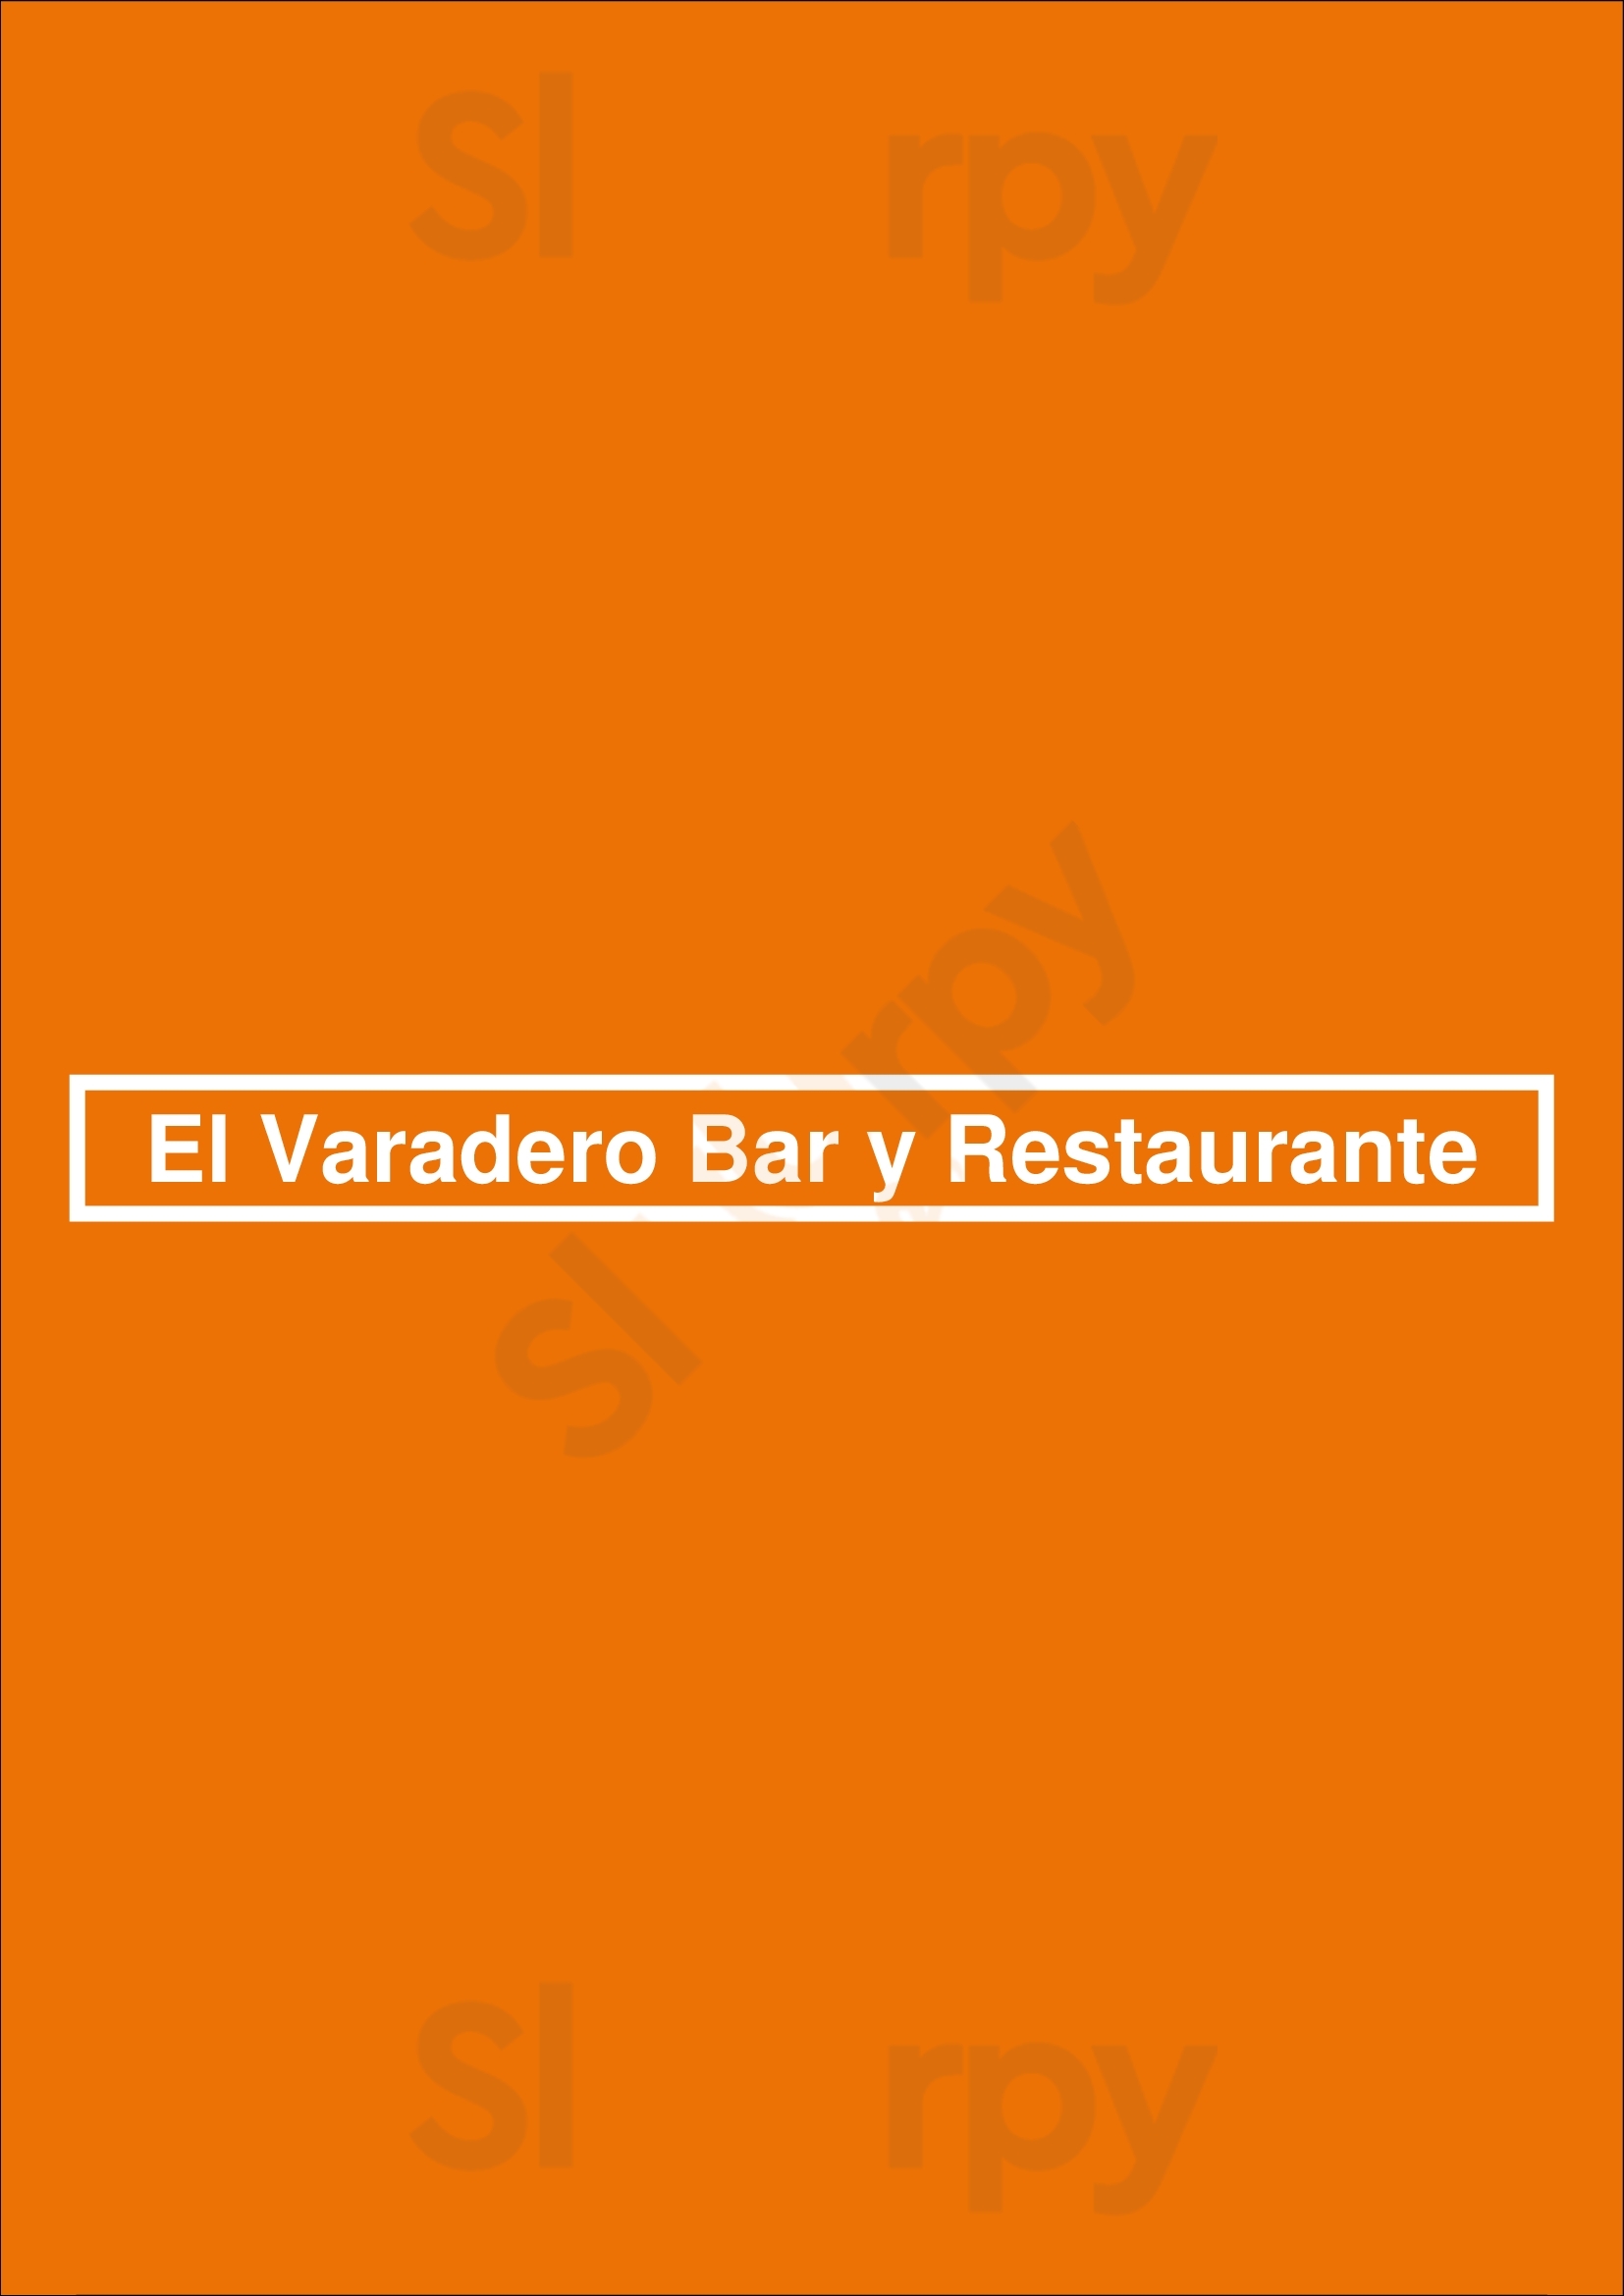 El Varadero Bar Y Restaurante San Juan Menu - 1